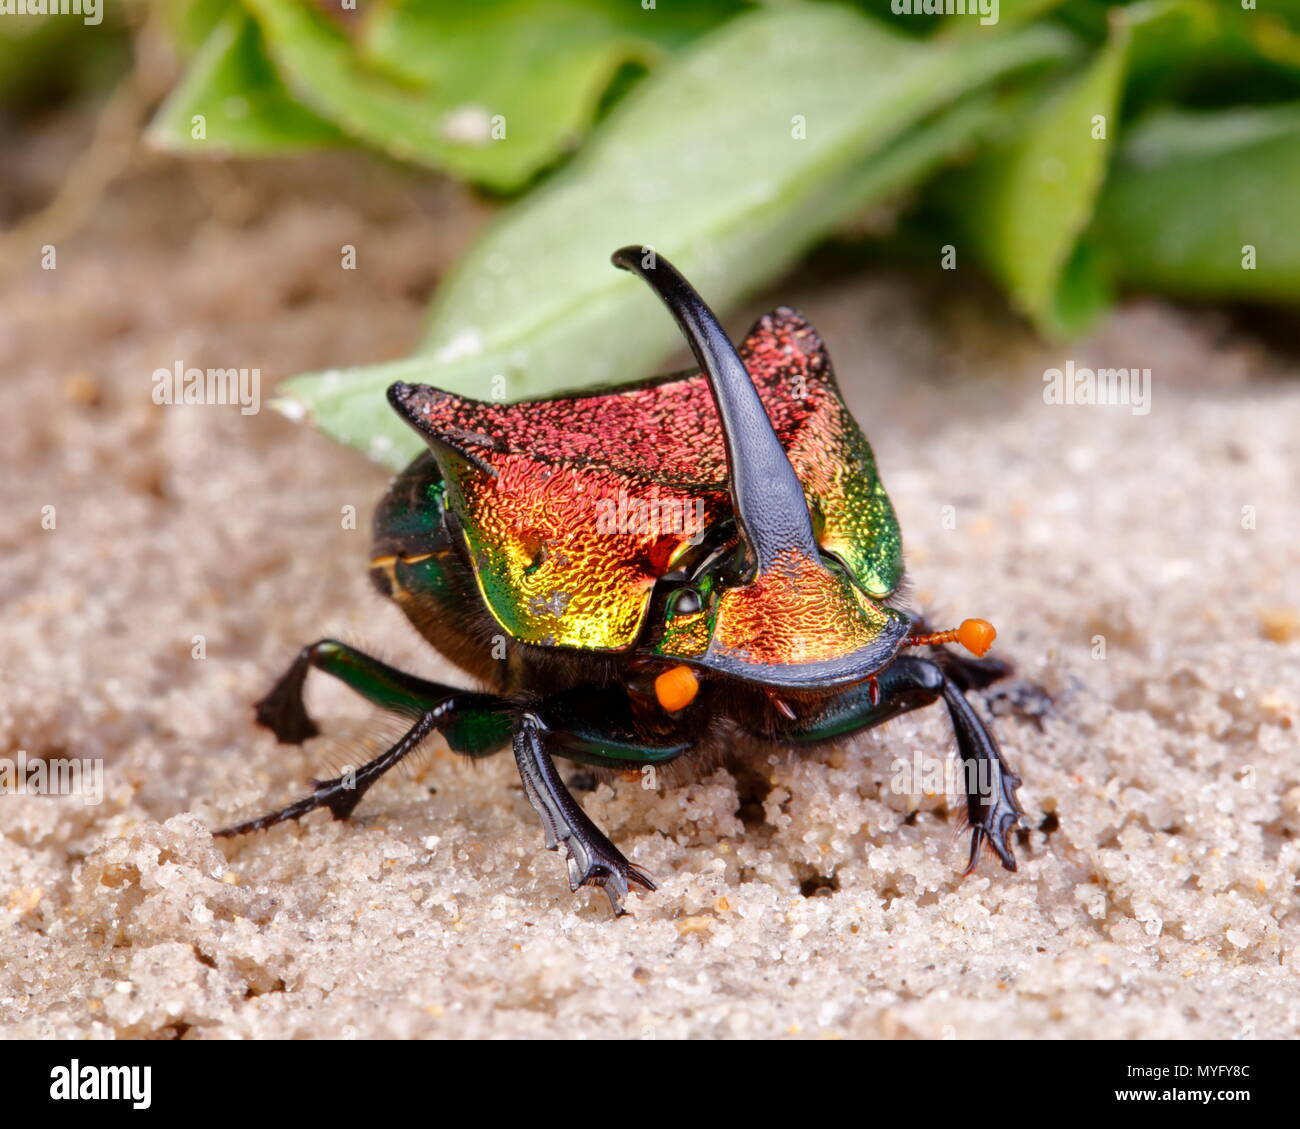 Un arc-en-ciel scarabée mâle, Phanaeus vindex, sur le sable. Banque D'Images